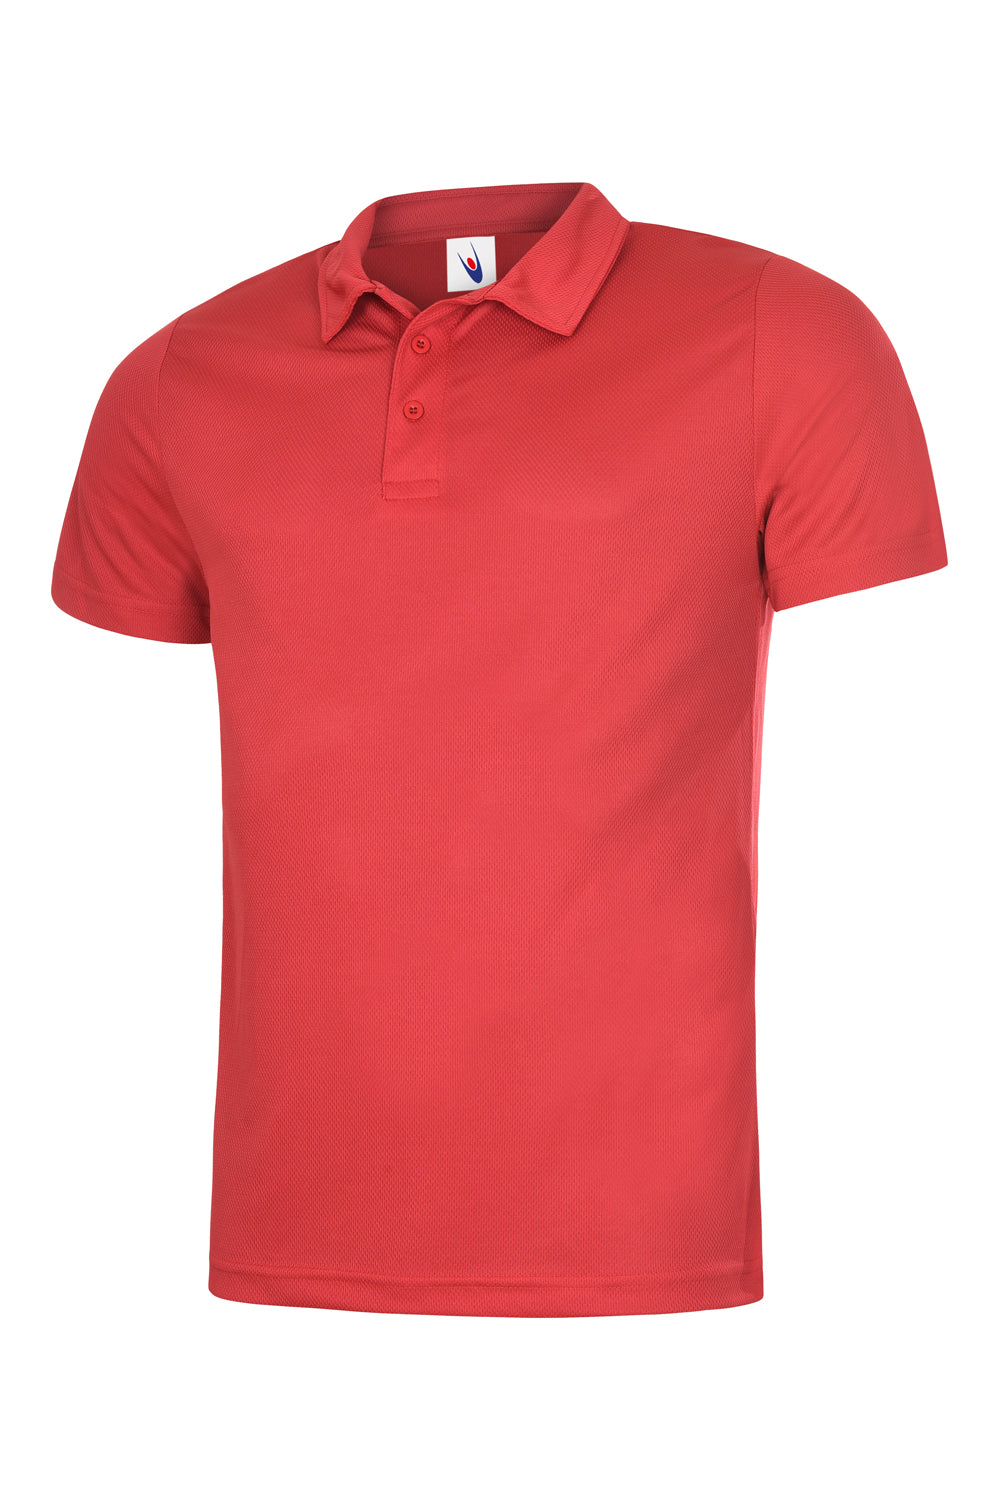 Uneek Mens Ultra Cool Poloshirt UC125 - Red